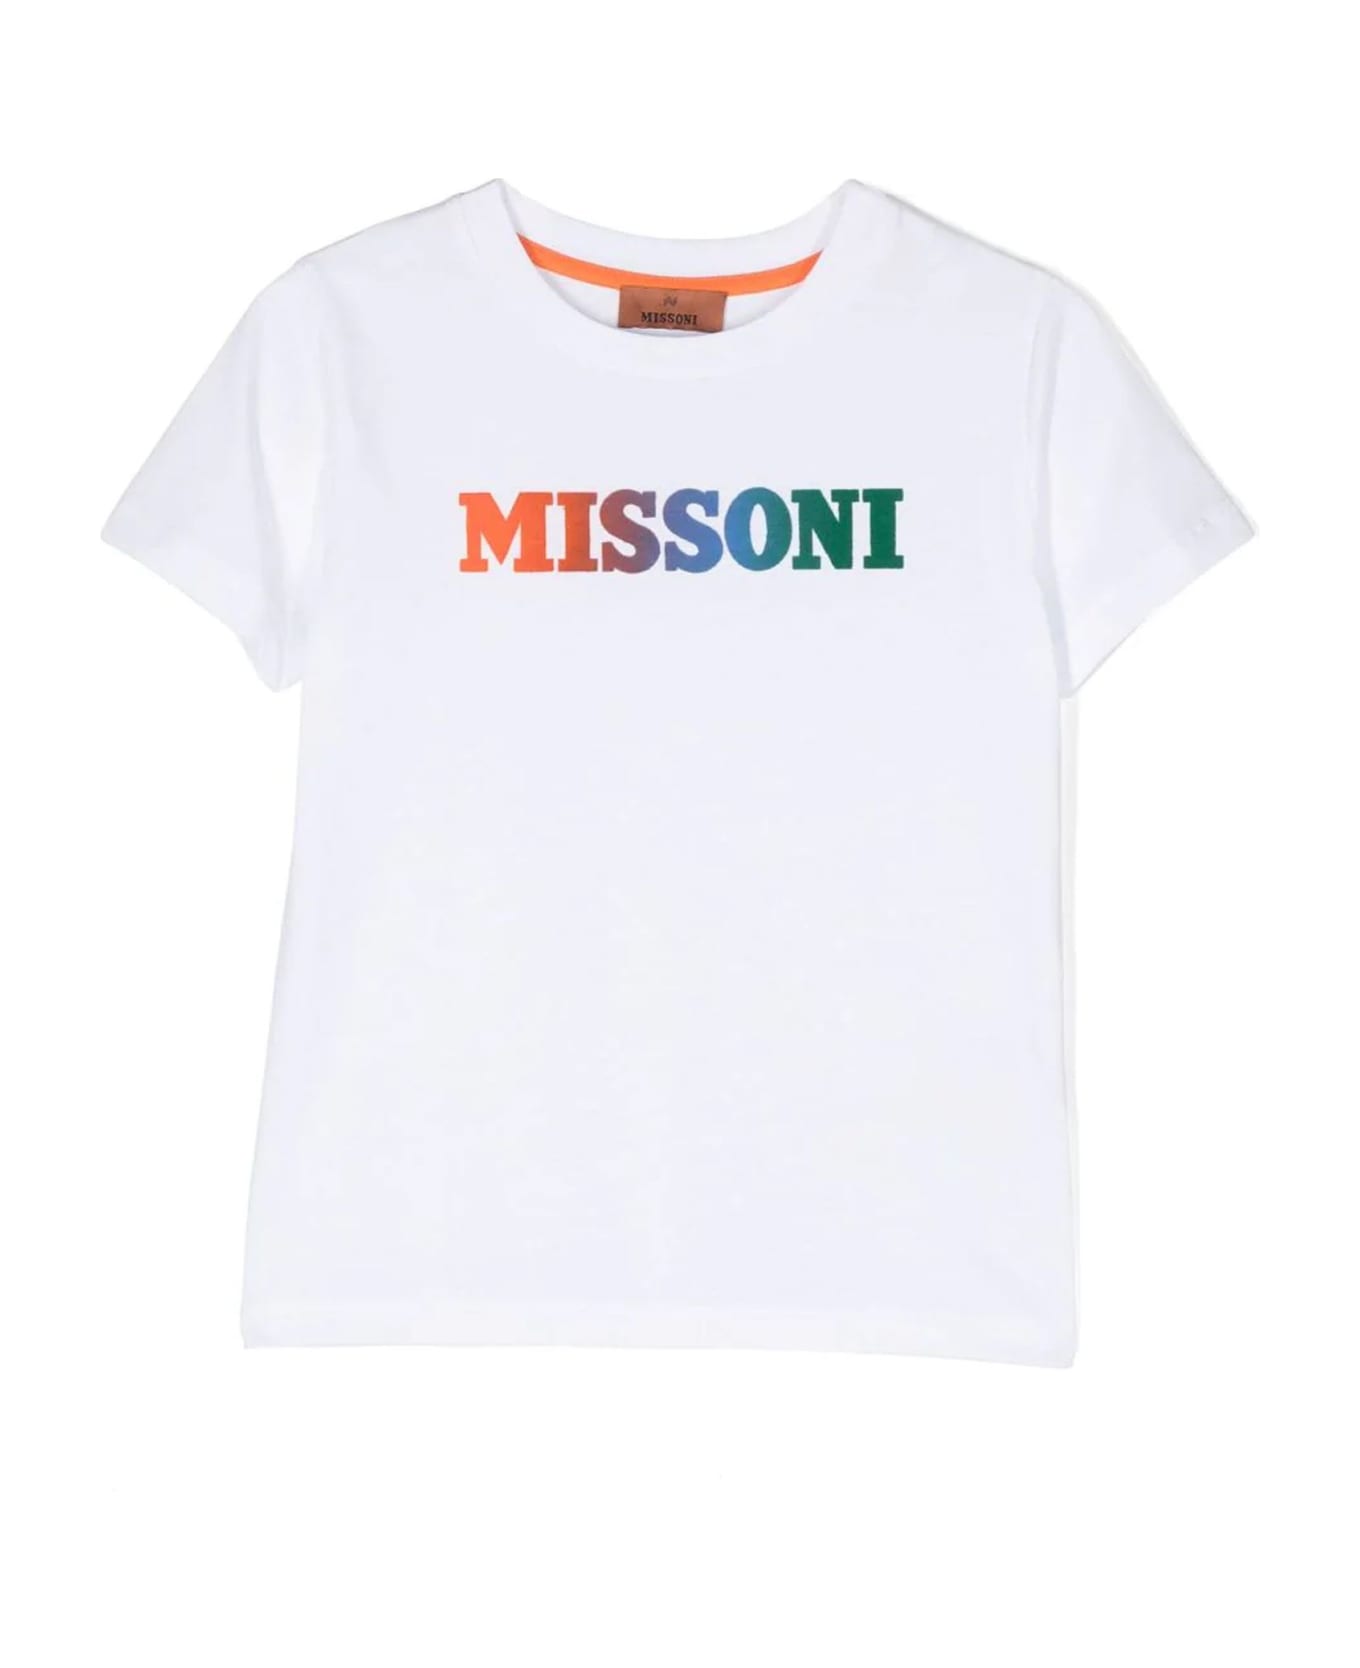 Missoni Kids White Cotton T-shirt - Bianco